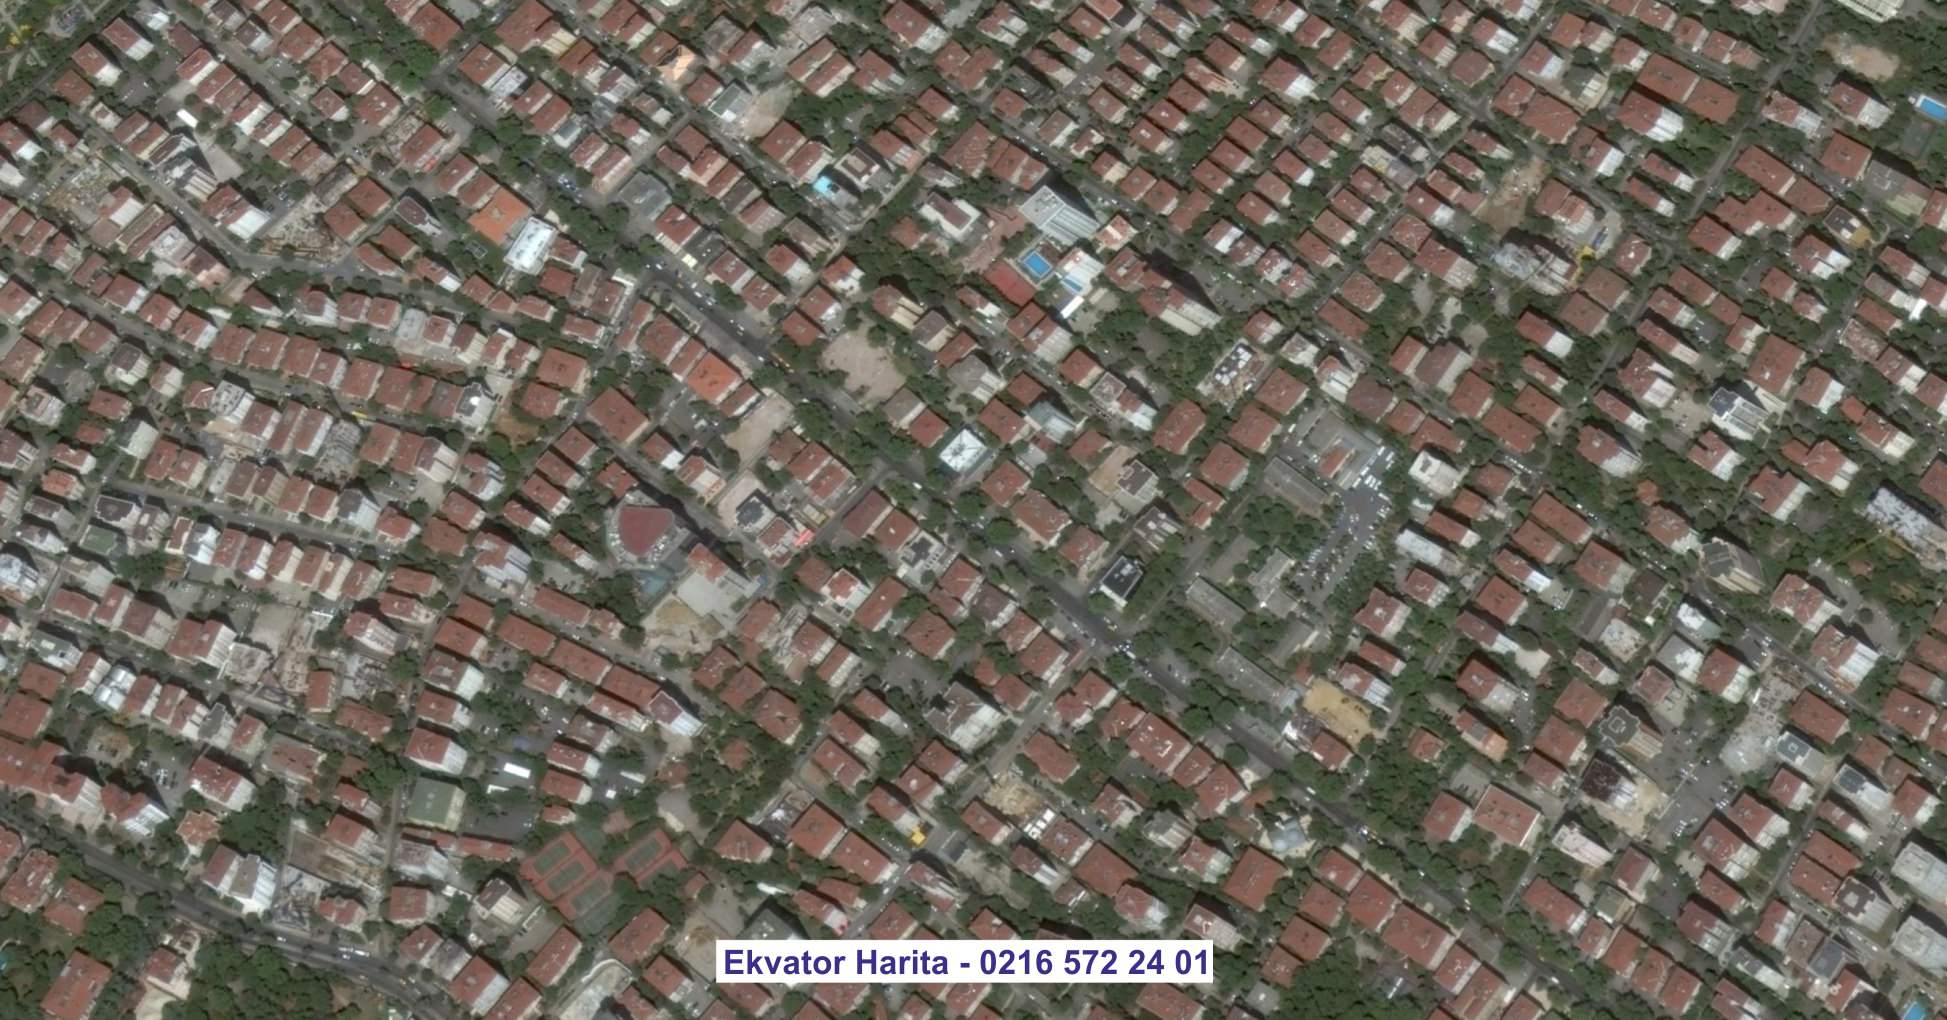 Kütahya Uydu Görüntüsü Örnek Fotoğrafı